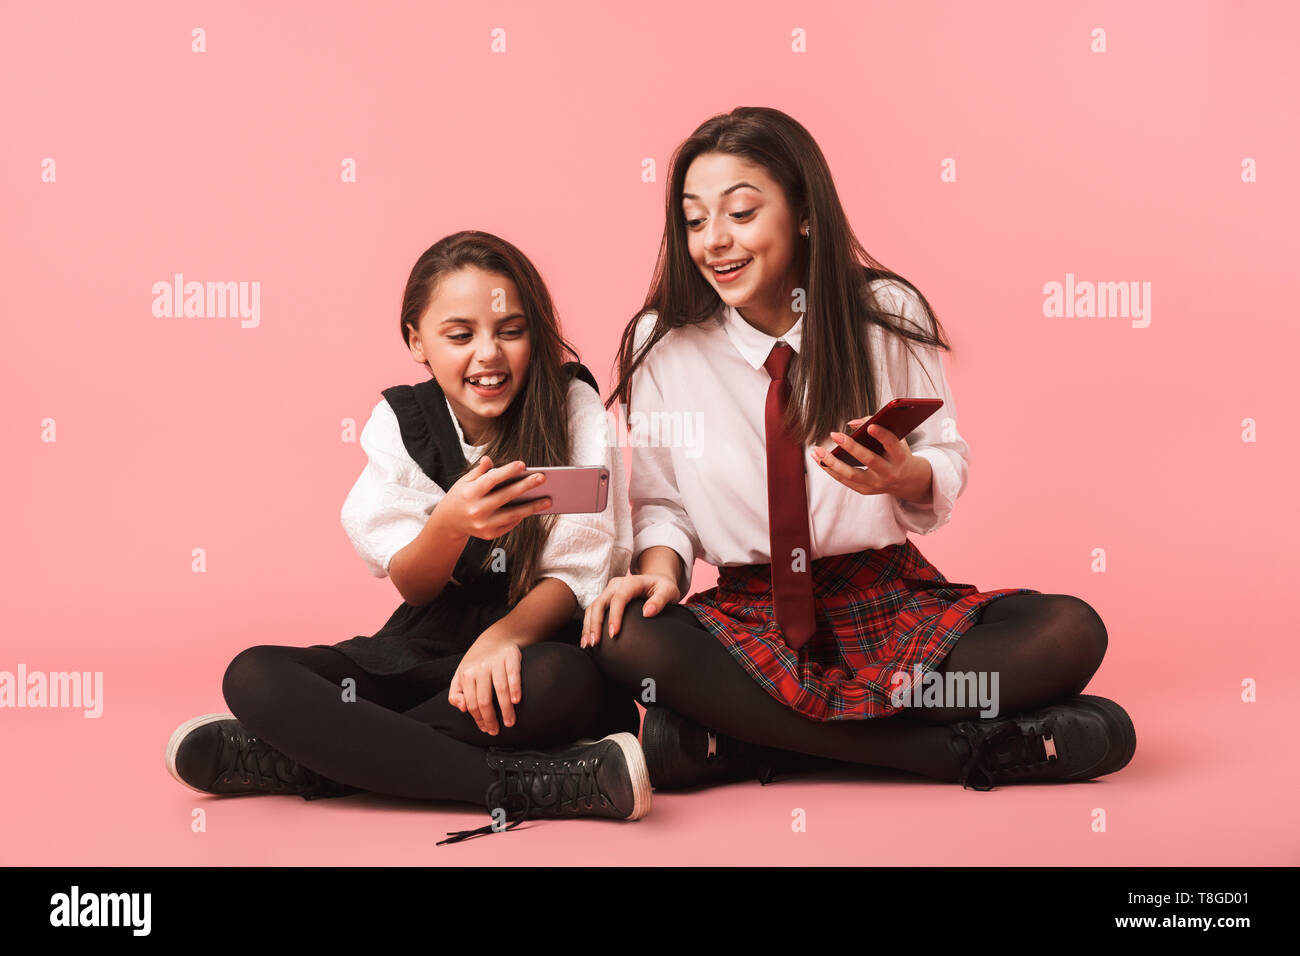 Ritratto di gioiosa ragazze in uniforme scolastica utilizzando i telefoni cellulari mentre è seduto sul pavimento isolato su sfondo rosso Foto Stock